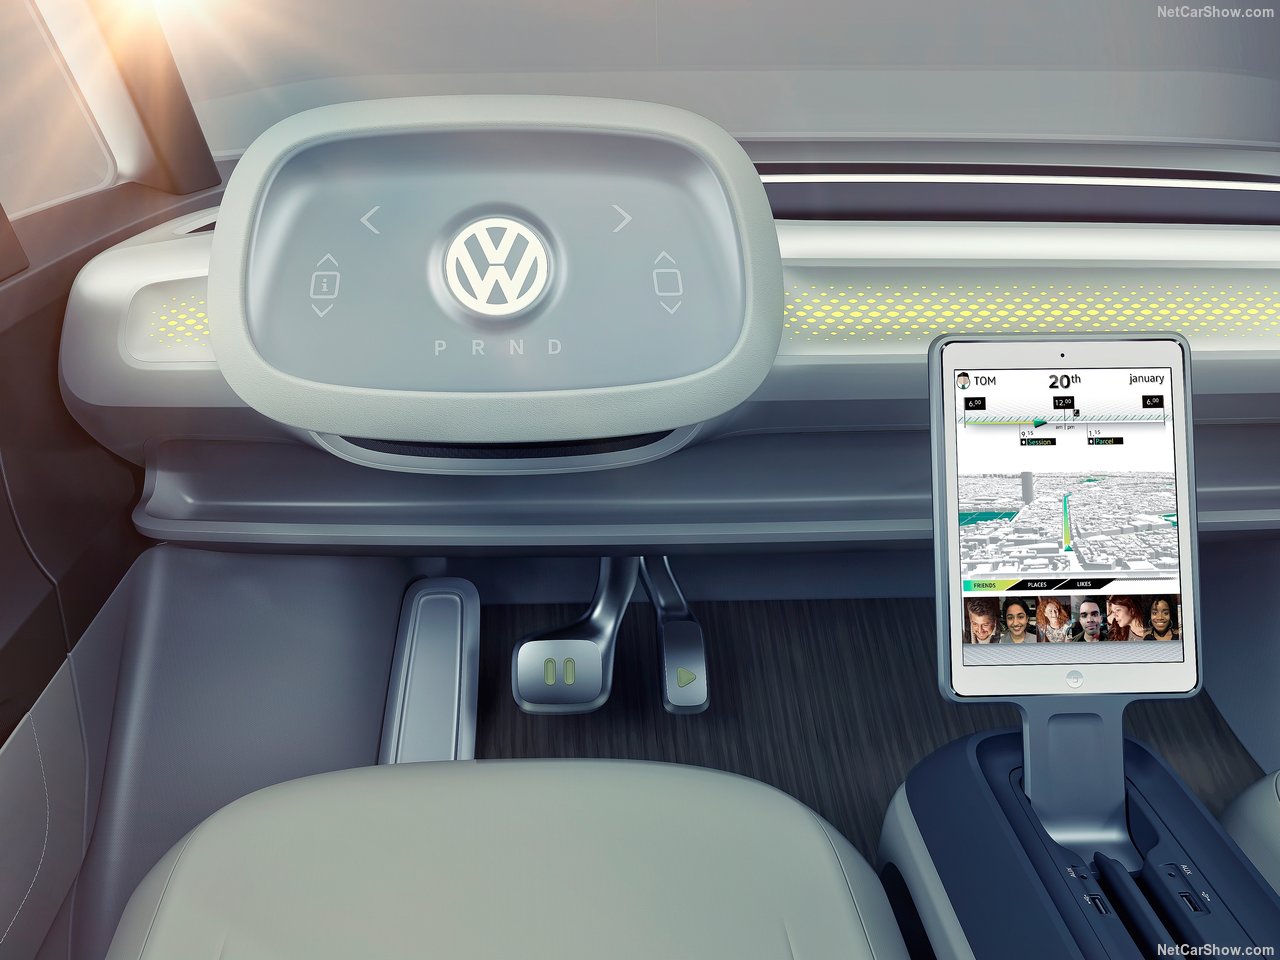 Volkswagen yeni panelvanı I.D. BUZZ tanıtıldı! Volkswagen I.D. BUZZ’un özellikleri neler?